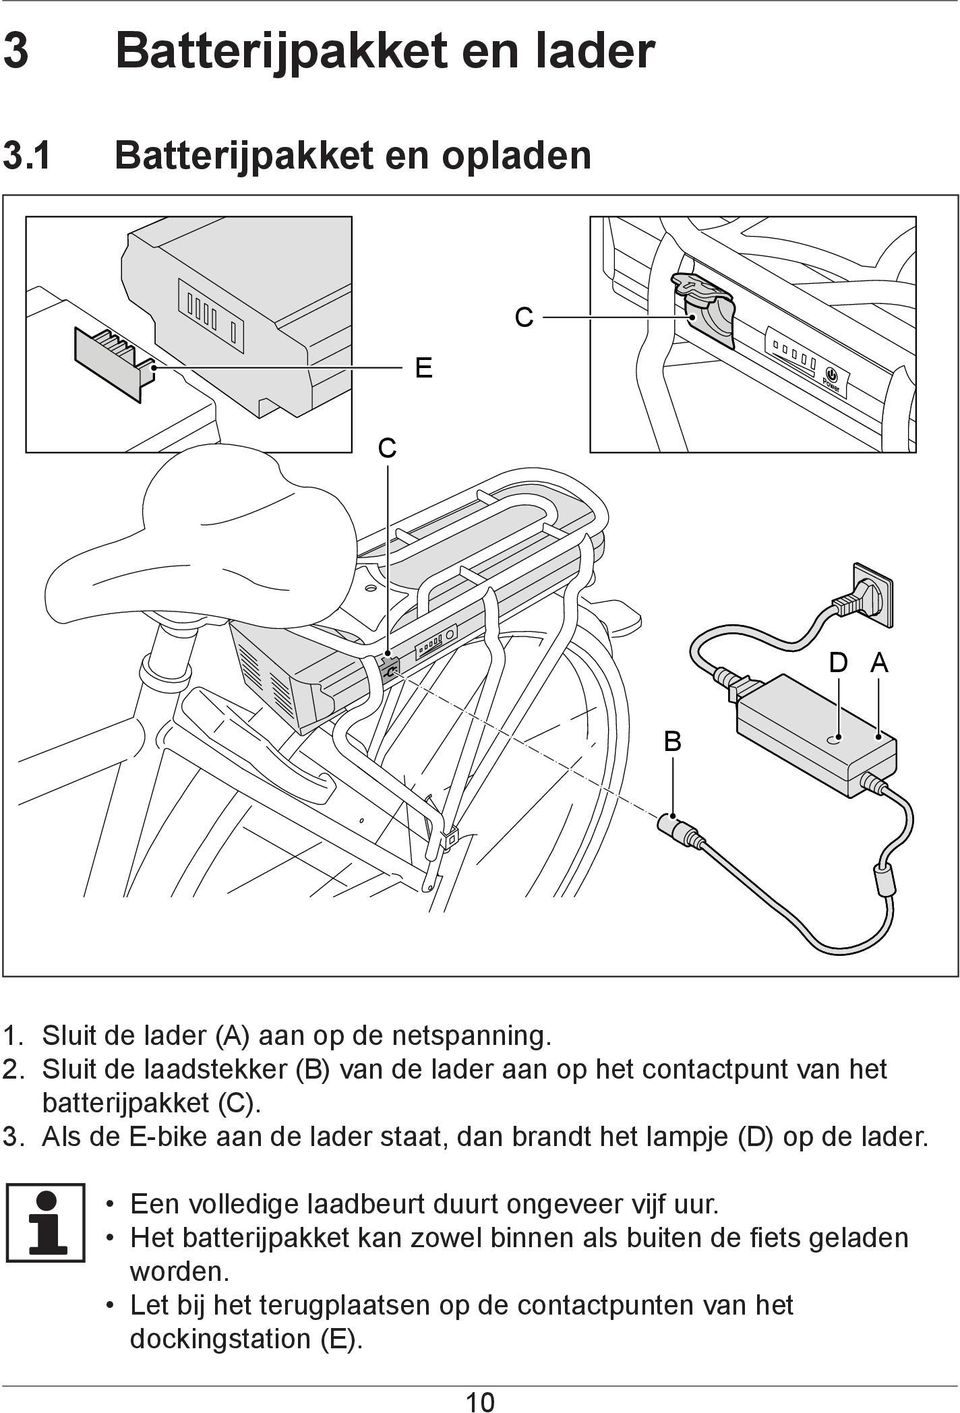 Als de E-bike aan de lader staat, dan brandt het lampje (D) op de lader.